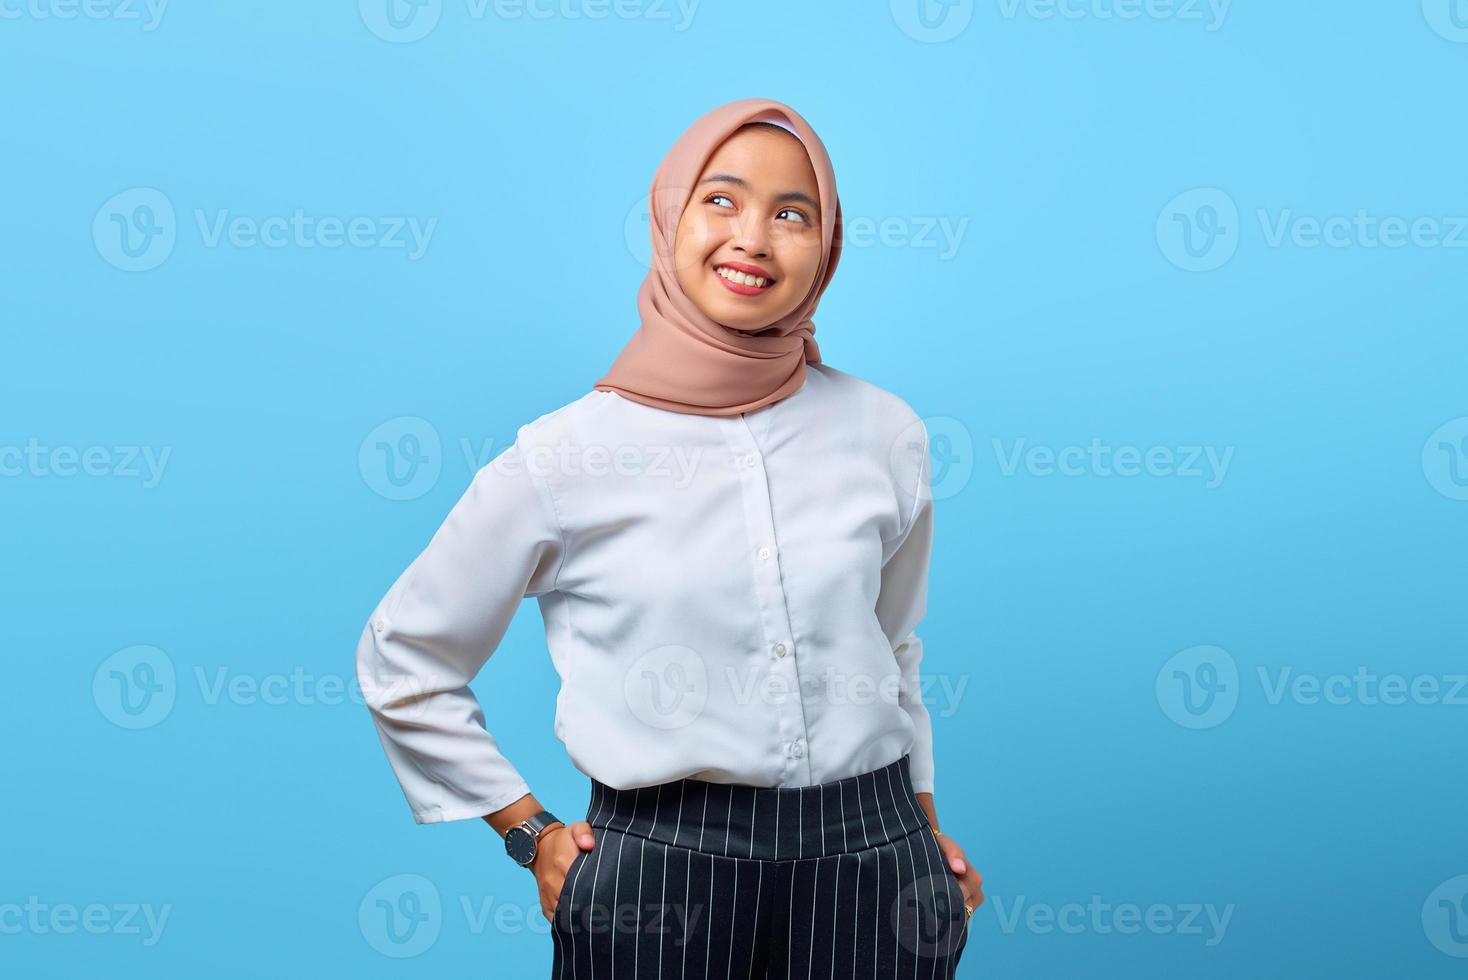 portrait de charmante jeune femme asiatique avec bonne humeur sur fond bleu photo